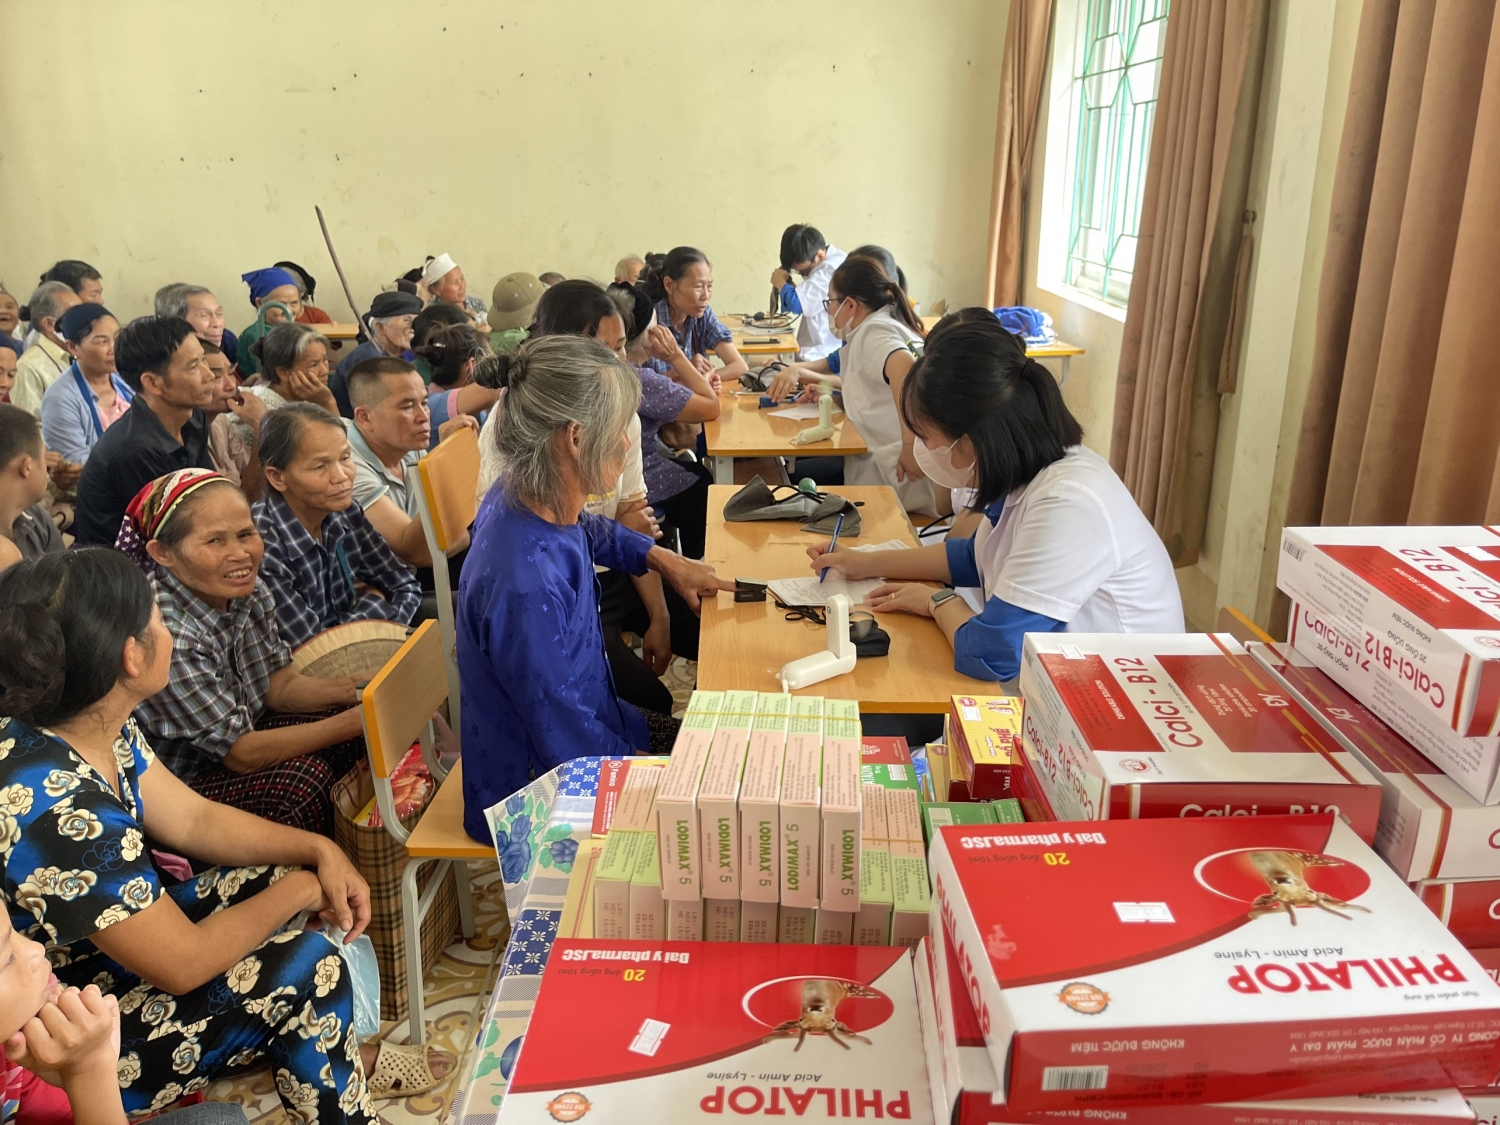 Tổ chức tư vấn sức khỏe, khám bệnh, cấp phát thuốc miễn phí cho 100 đối tượng chính sách, hộ nghèo tại xã Tiên Thành.